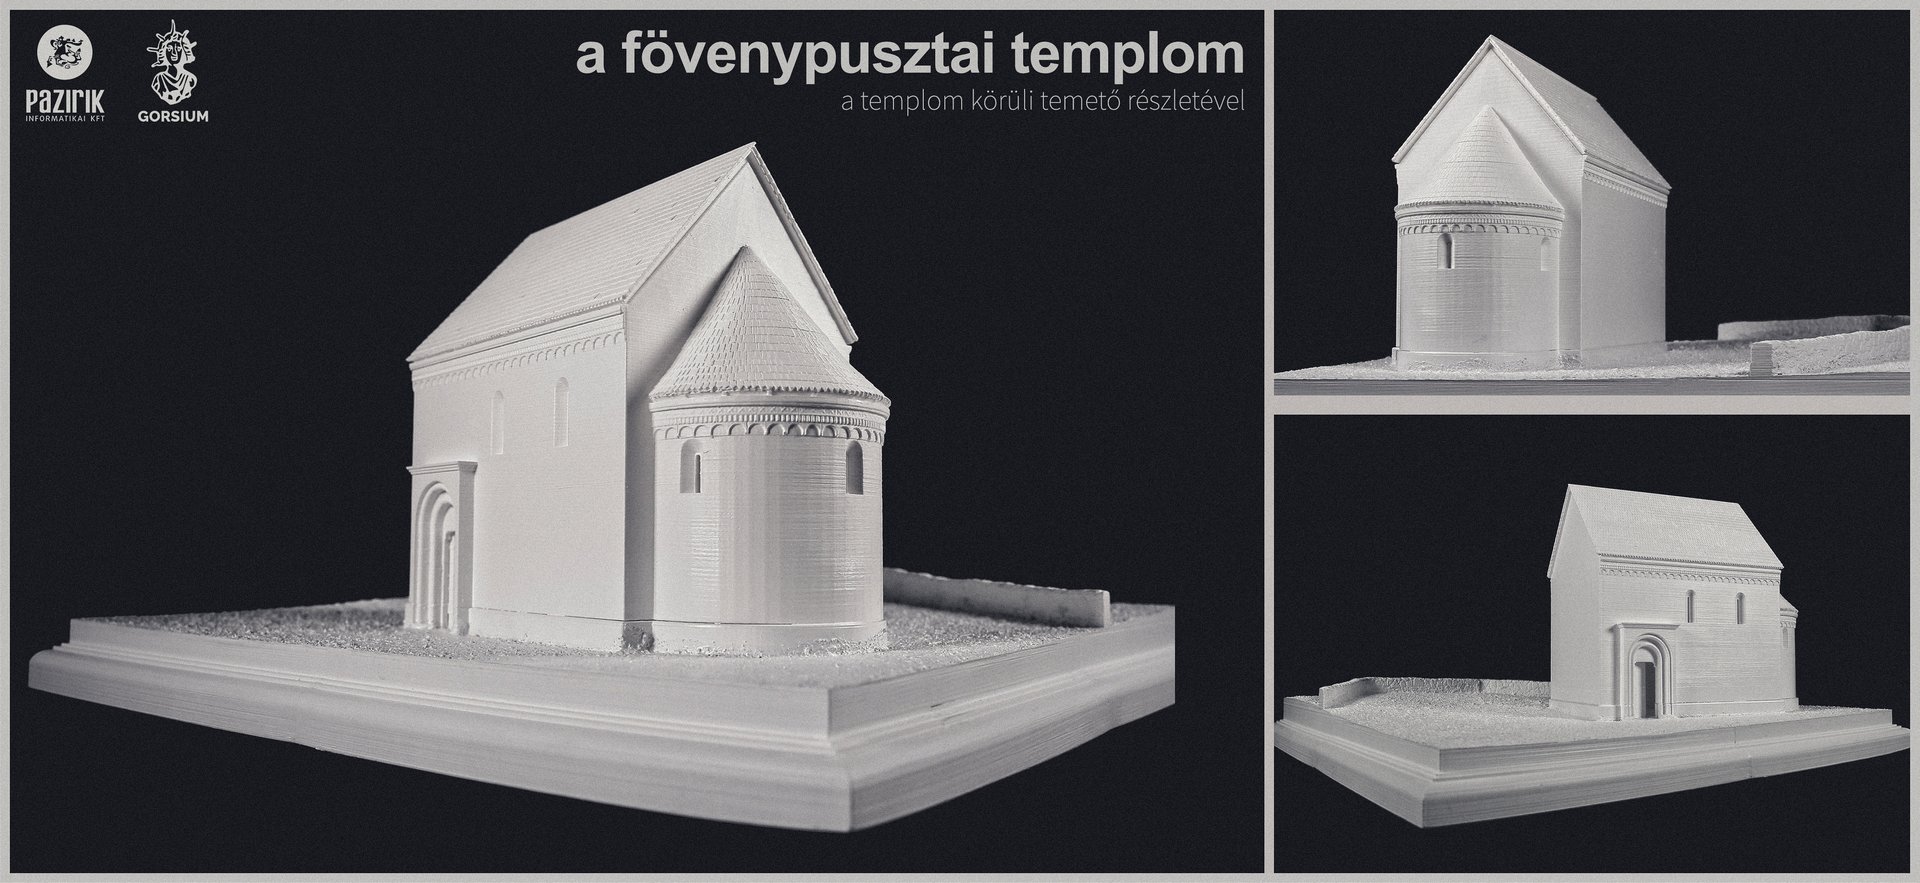 Fövenypusztai templom – elméleti rekonstrukciós makett